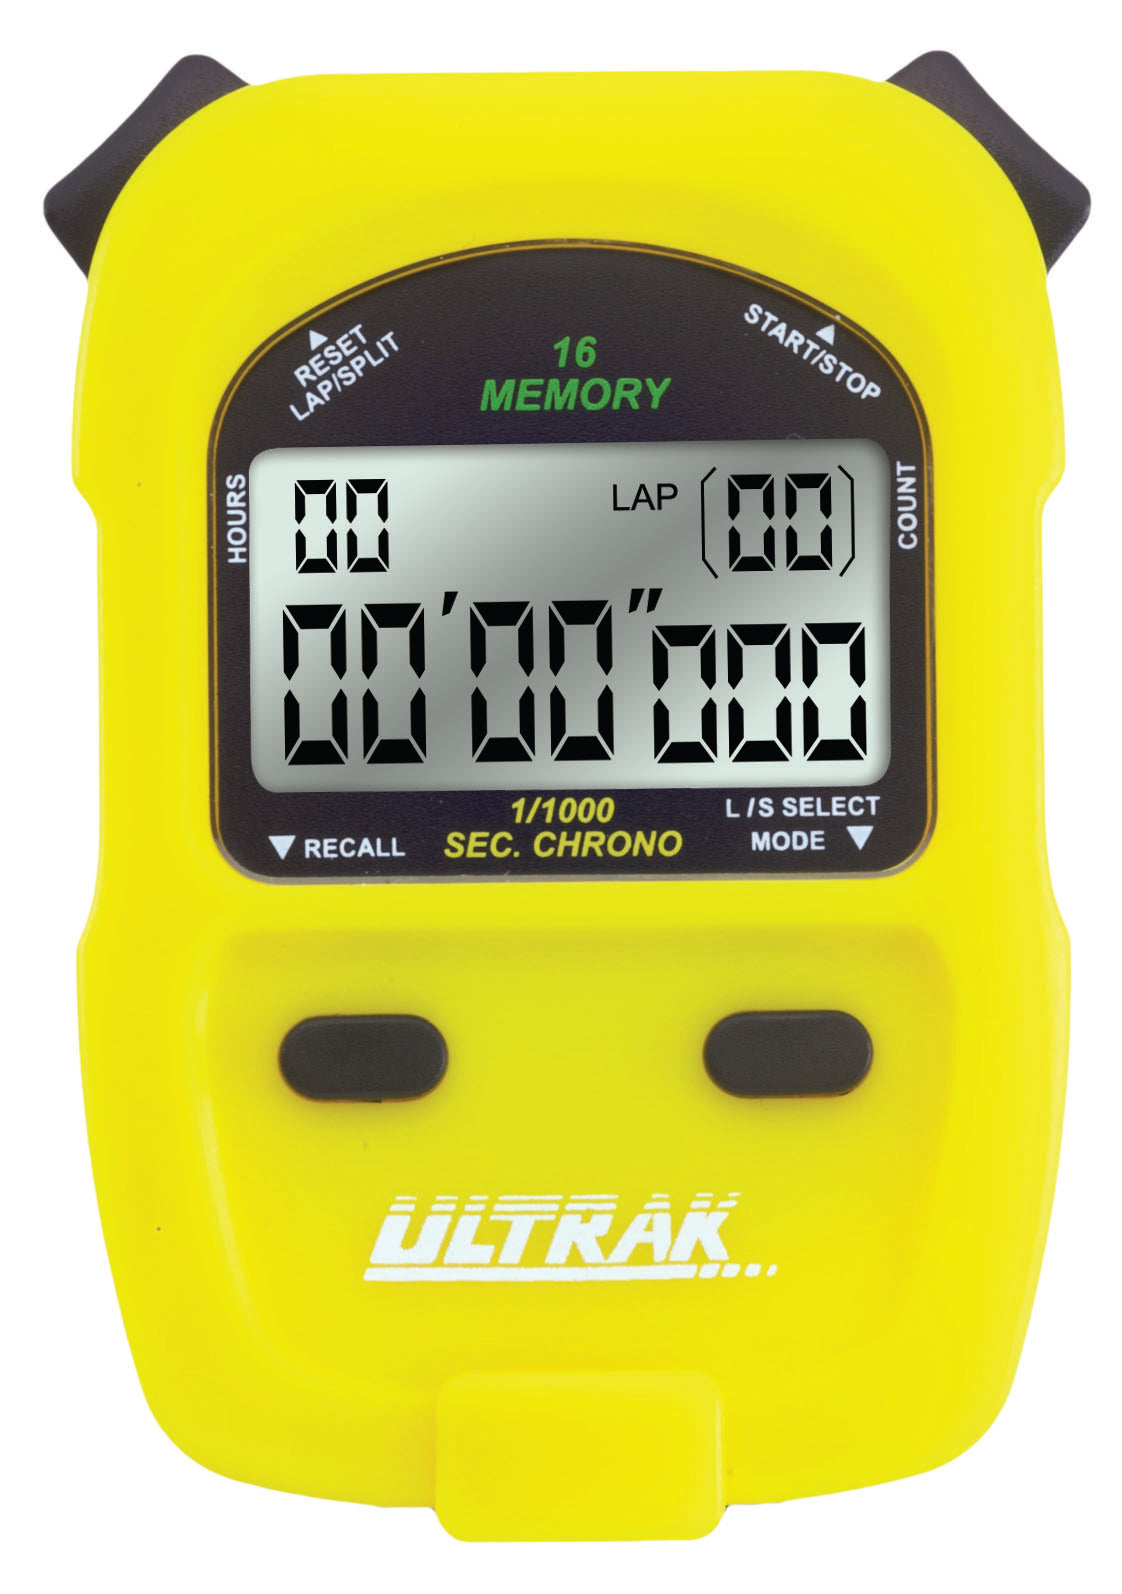 ULTRAK 460 - 16 Lap Memory-2 Line Display